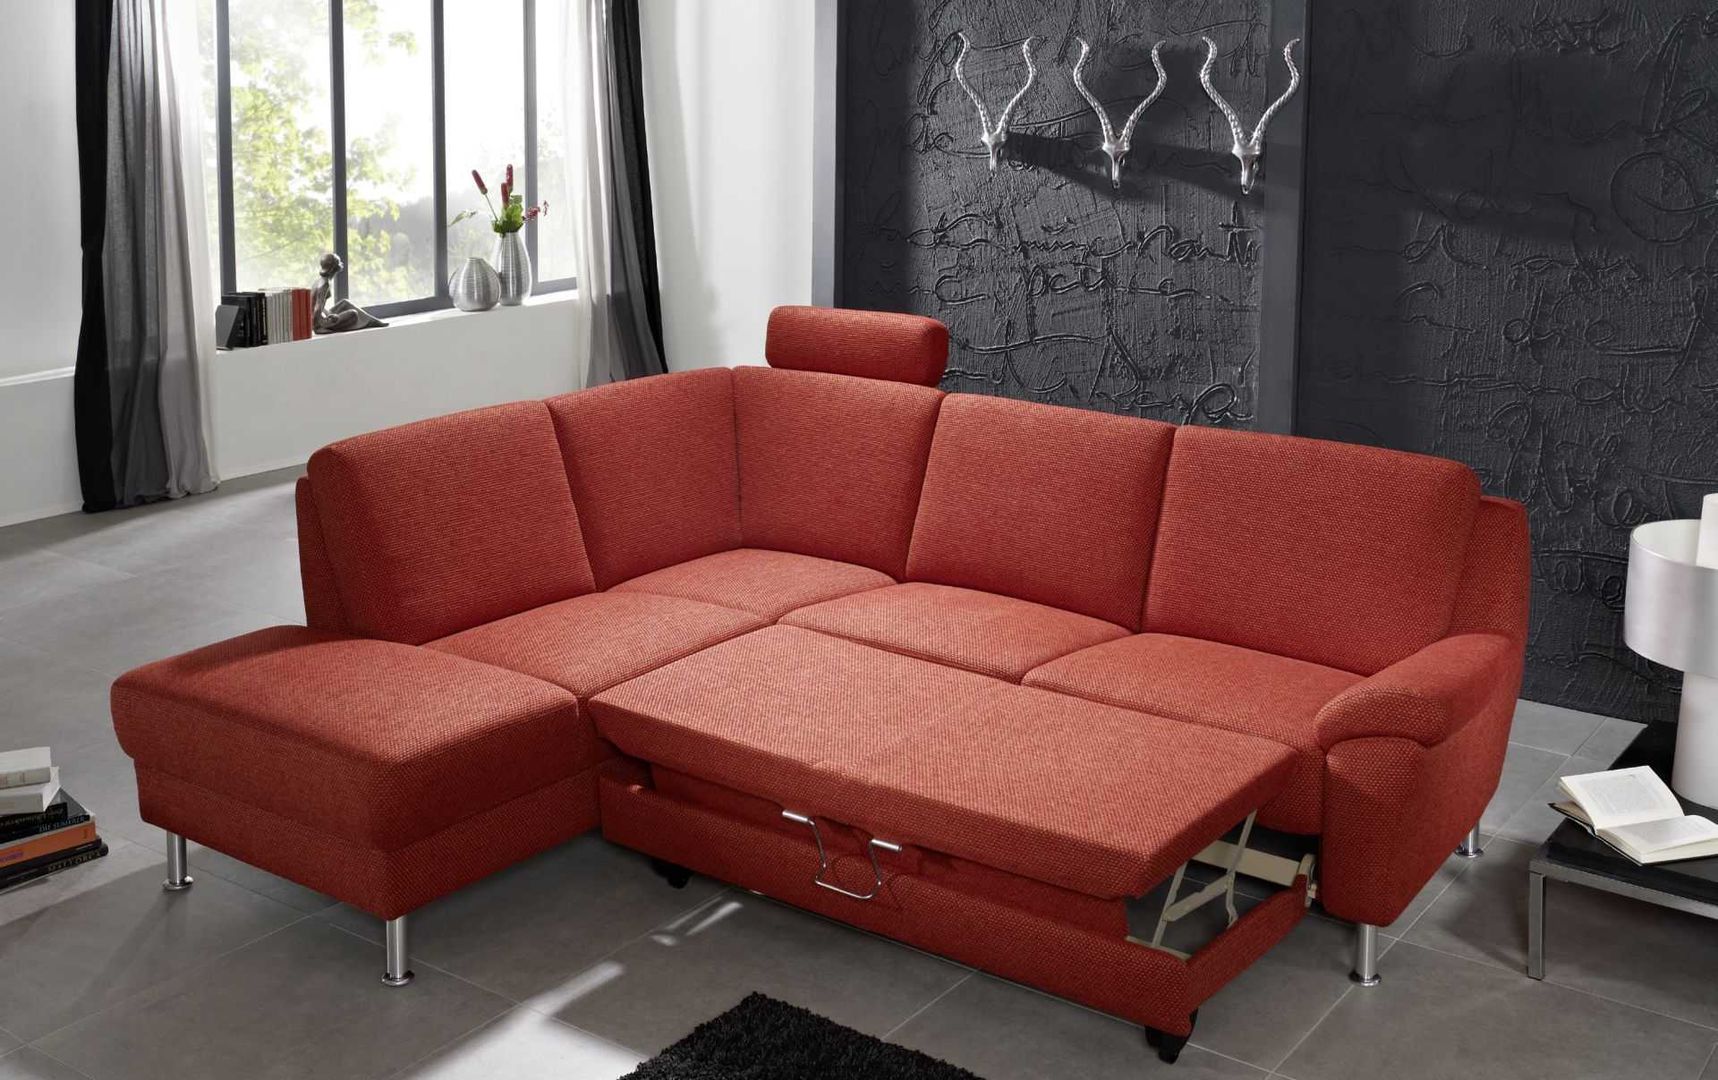 Modell InMOTION 5200 ARCO Polstermöbel Moderne Wohnzimmer Sofas und Sessel